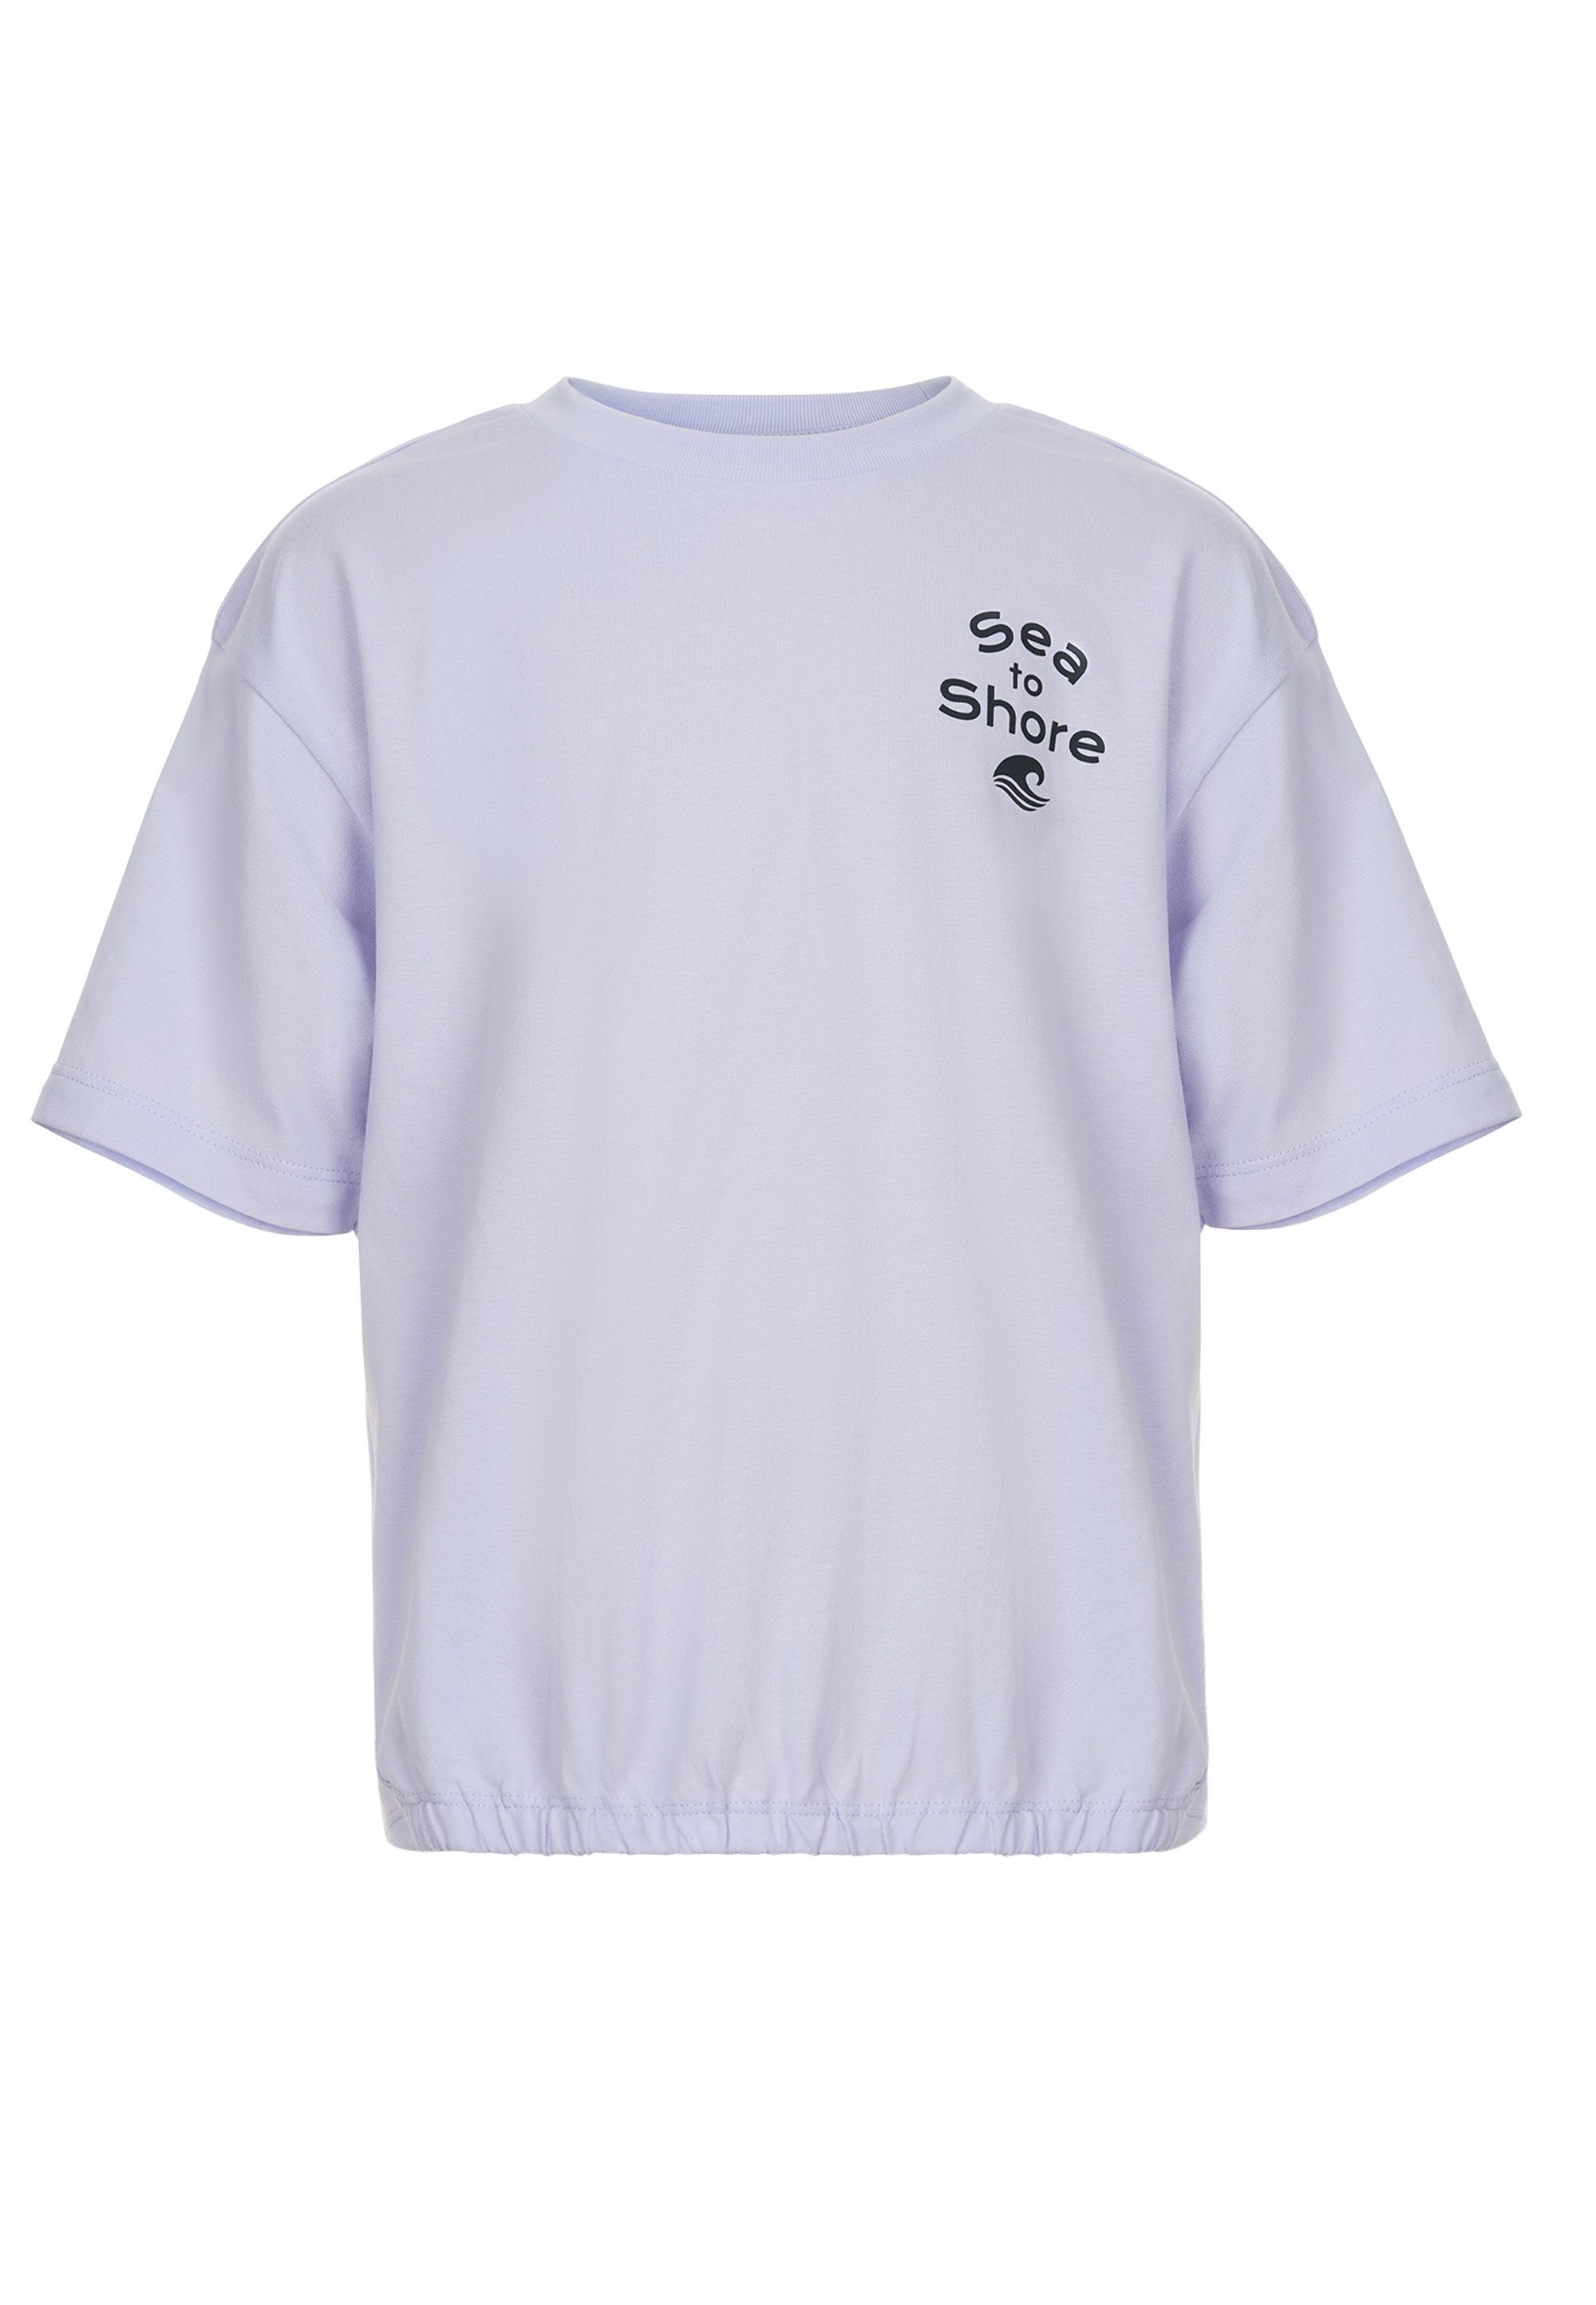 GIORDANO T-Shirt kleinem junior mit Print